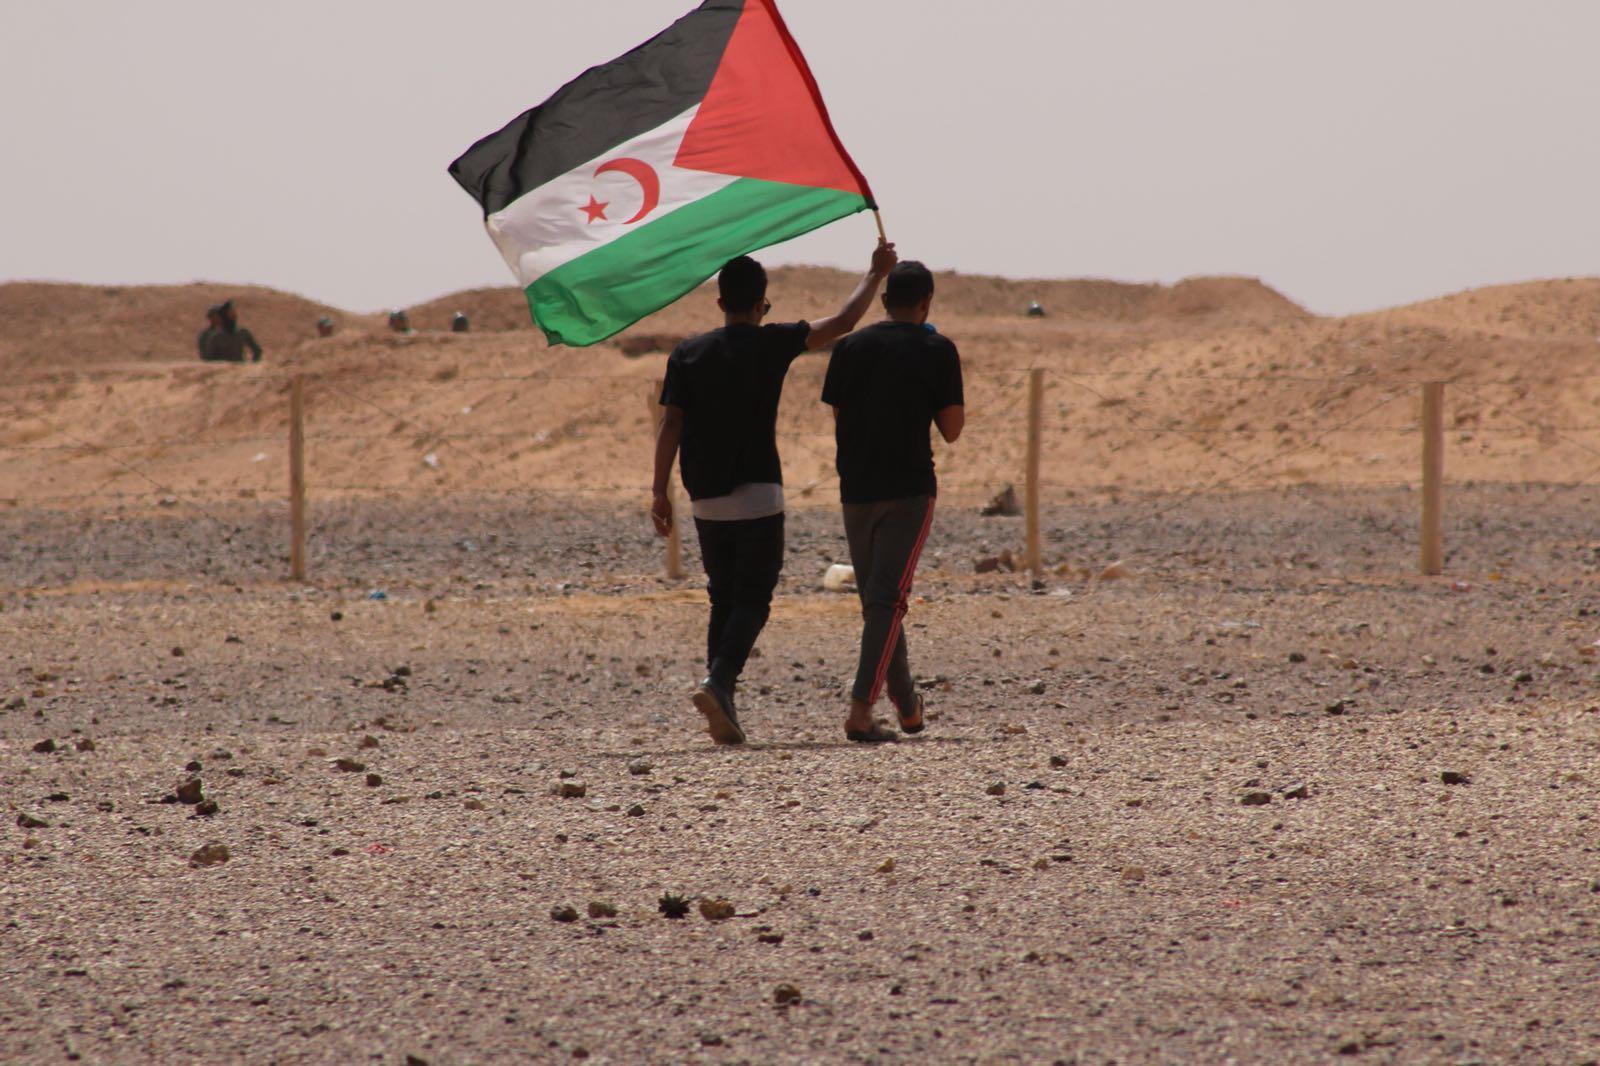 La bandiera della Repubblica democratica araba dei saharawi. Credits: Focus on Africa